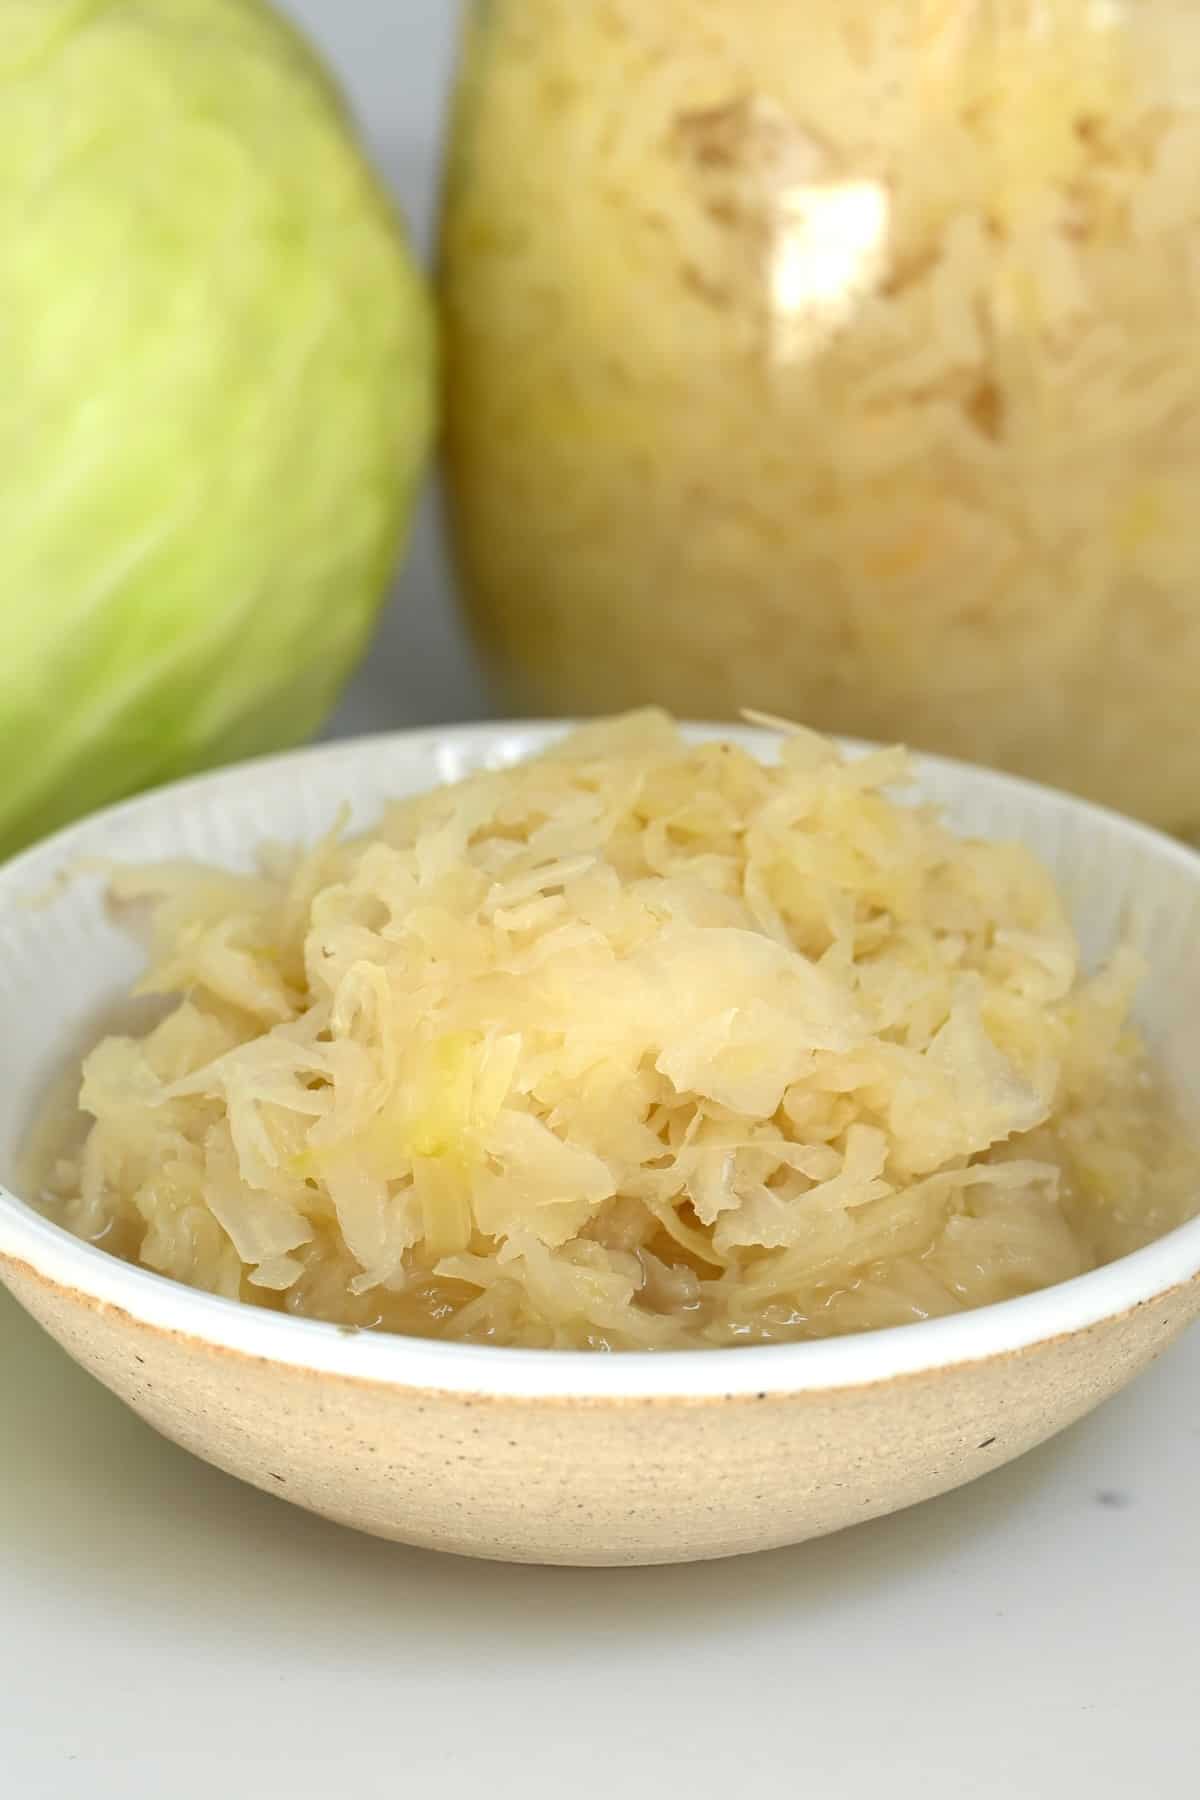 A bowl with homemade sauerkraut